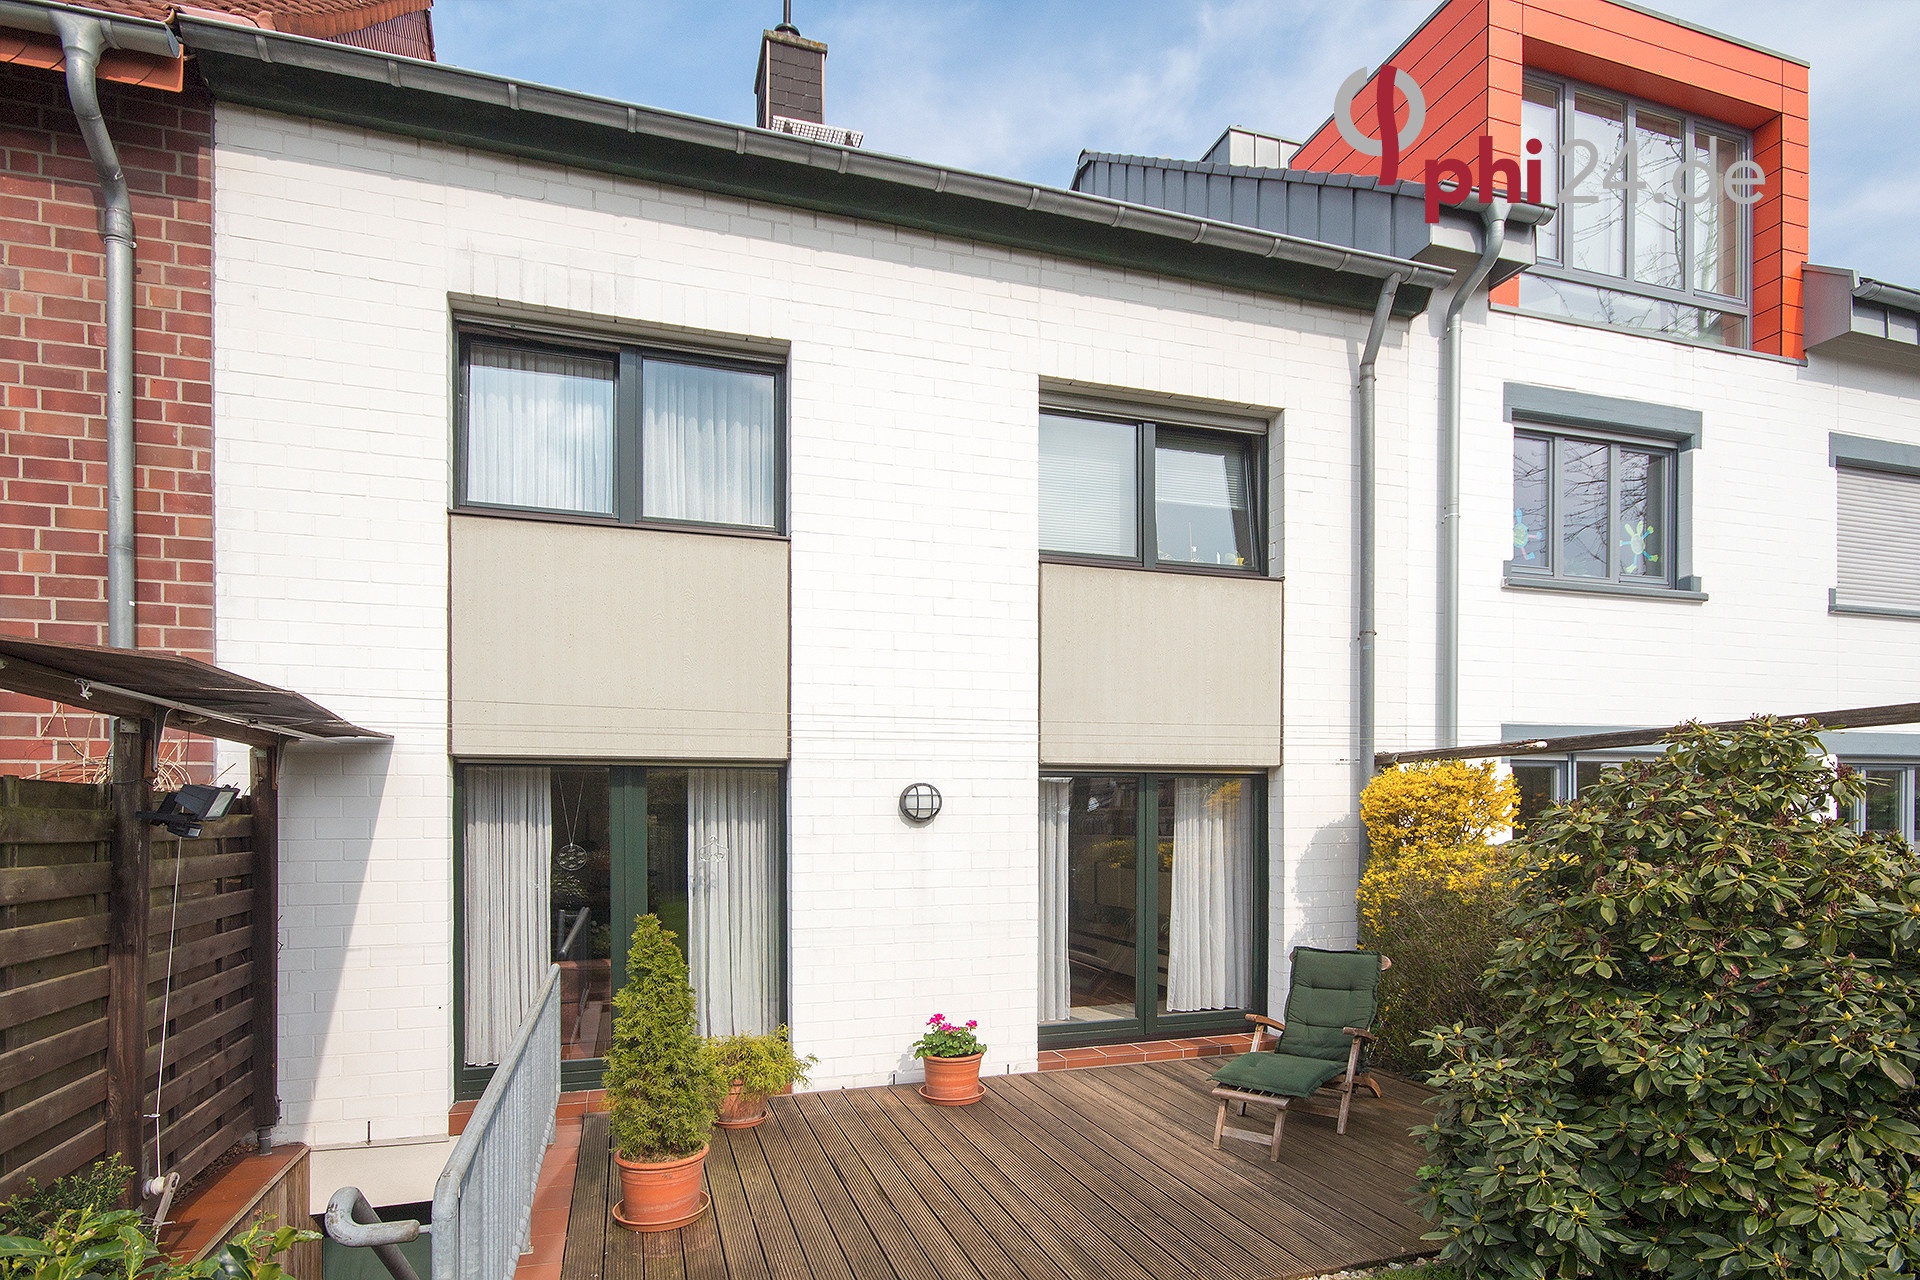 Immobilienmakler Aachen Reihenmittelhaus referenzen mit Immobilienbewertung